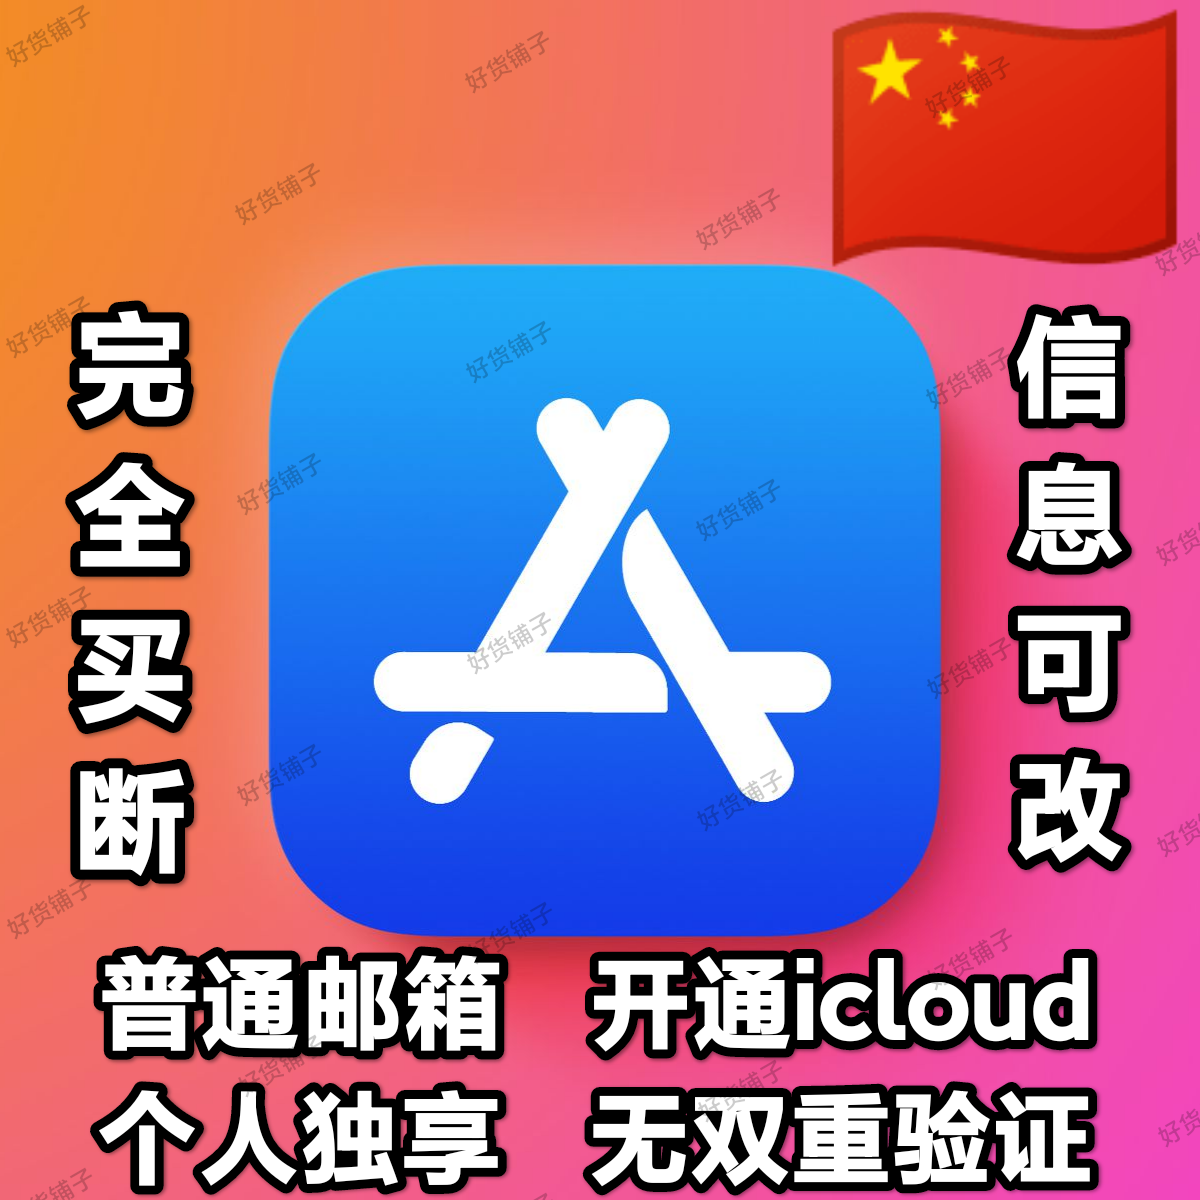 中国全新普通邮箱空白苹果id（无双重验证）（激活iCloud）（自动发货）（教程和说明注意都在下面的详情，请看完）